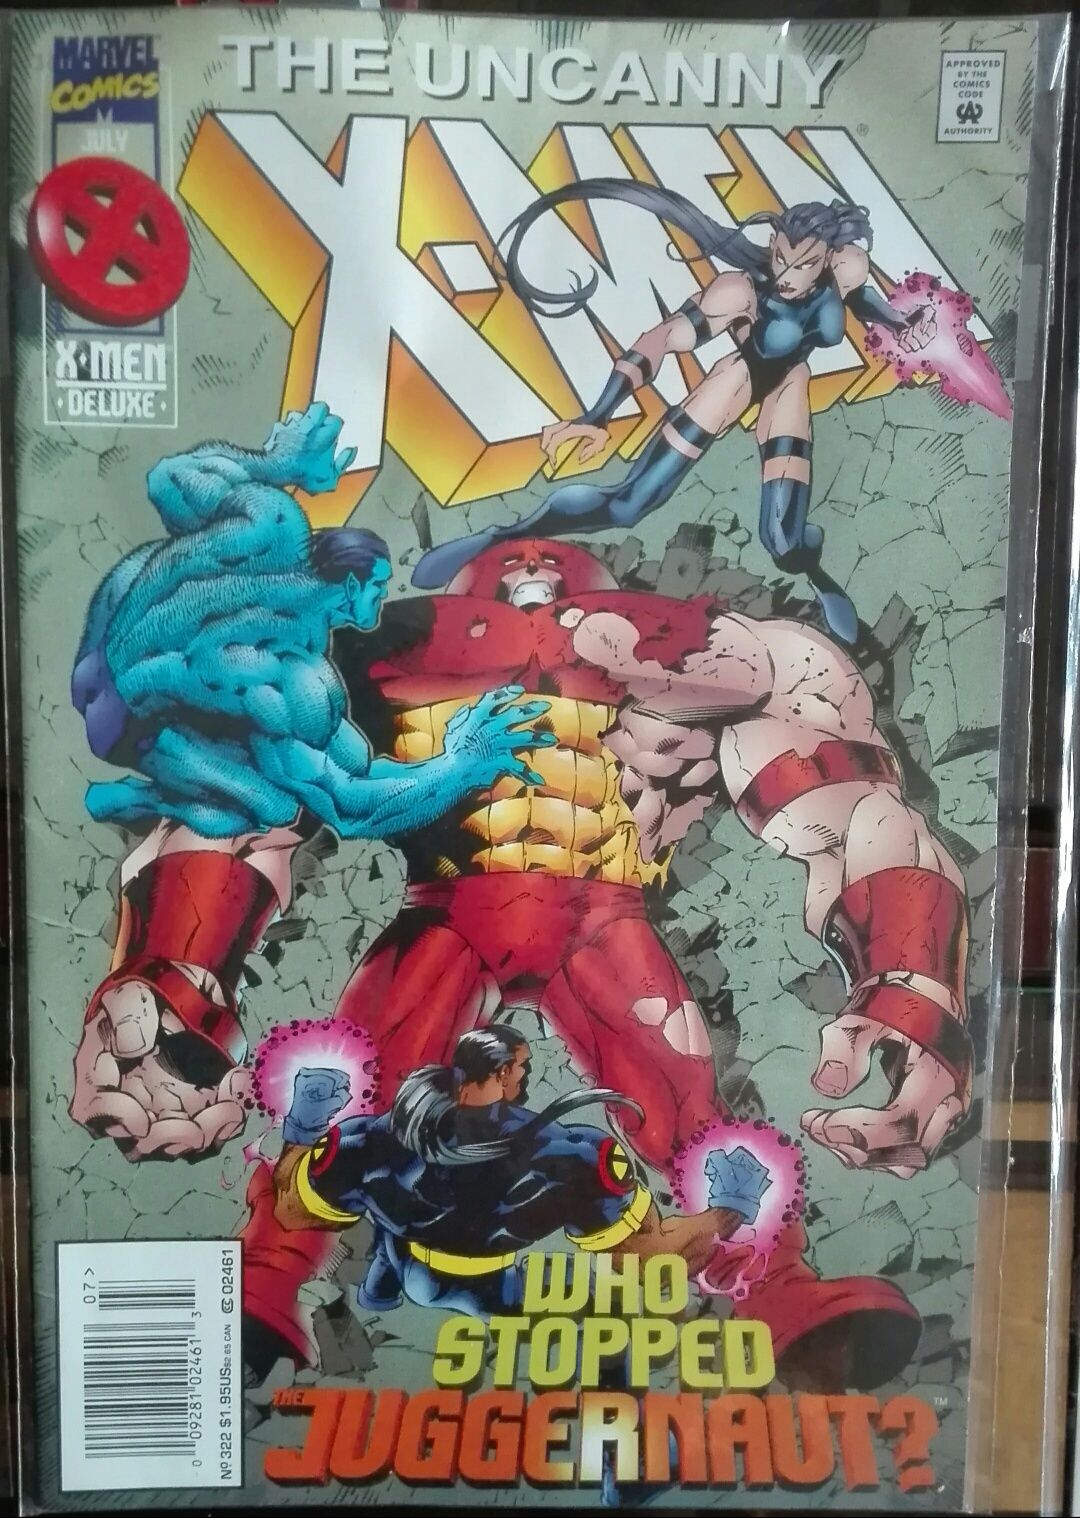 The Astonishing X-men Marvel, 1,2,3,4,5,6